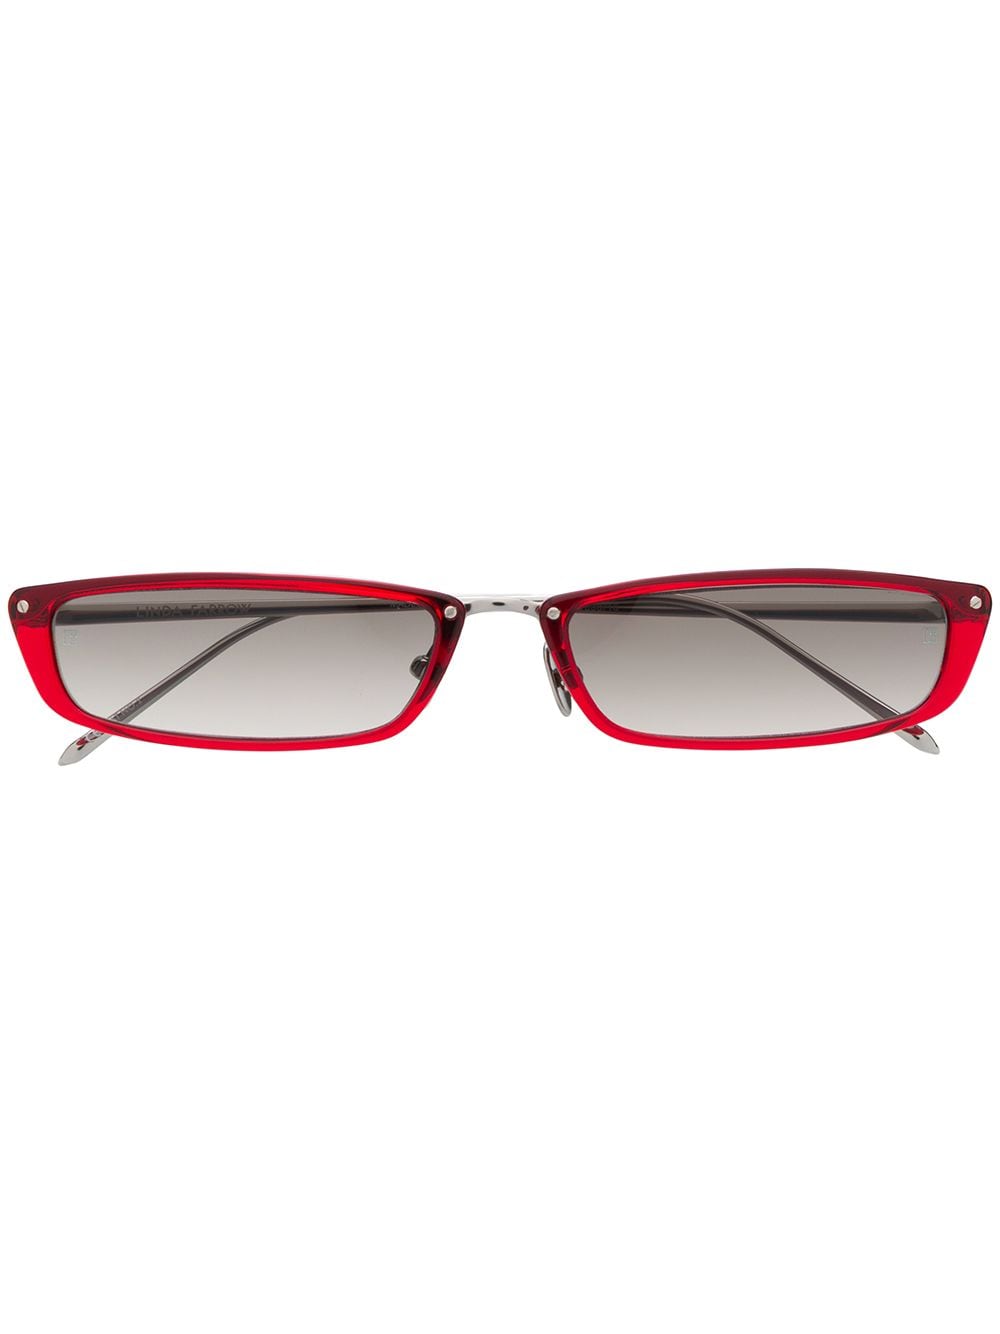 rectangular frame sunglasses